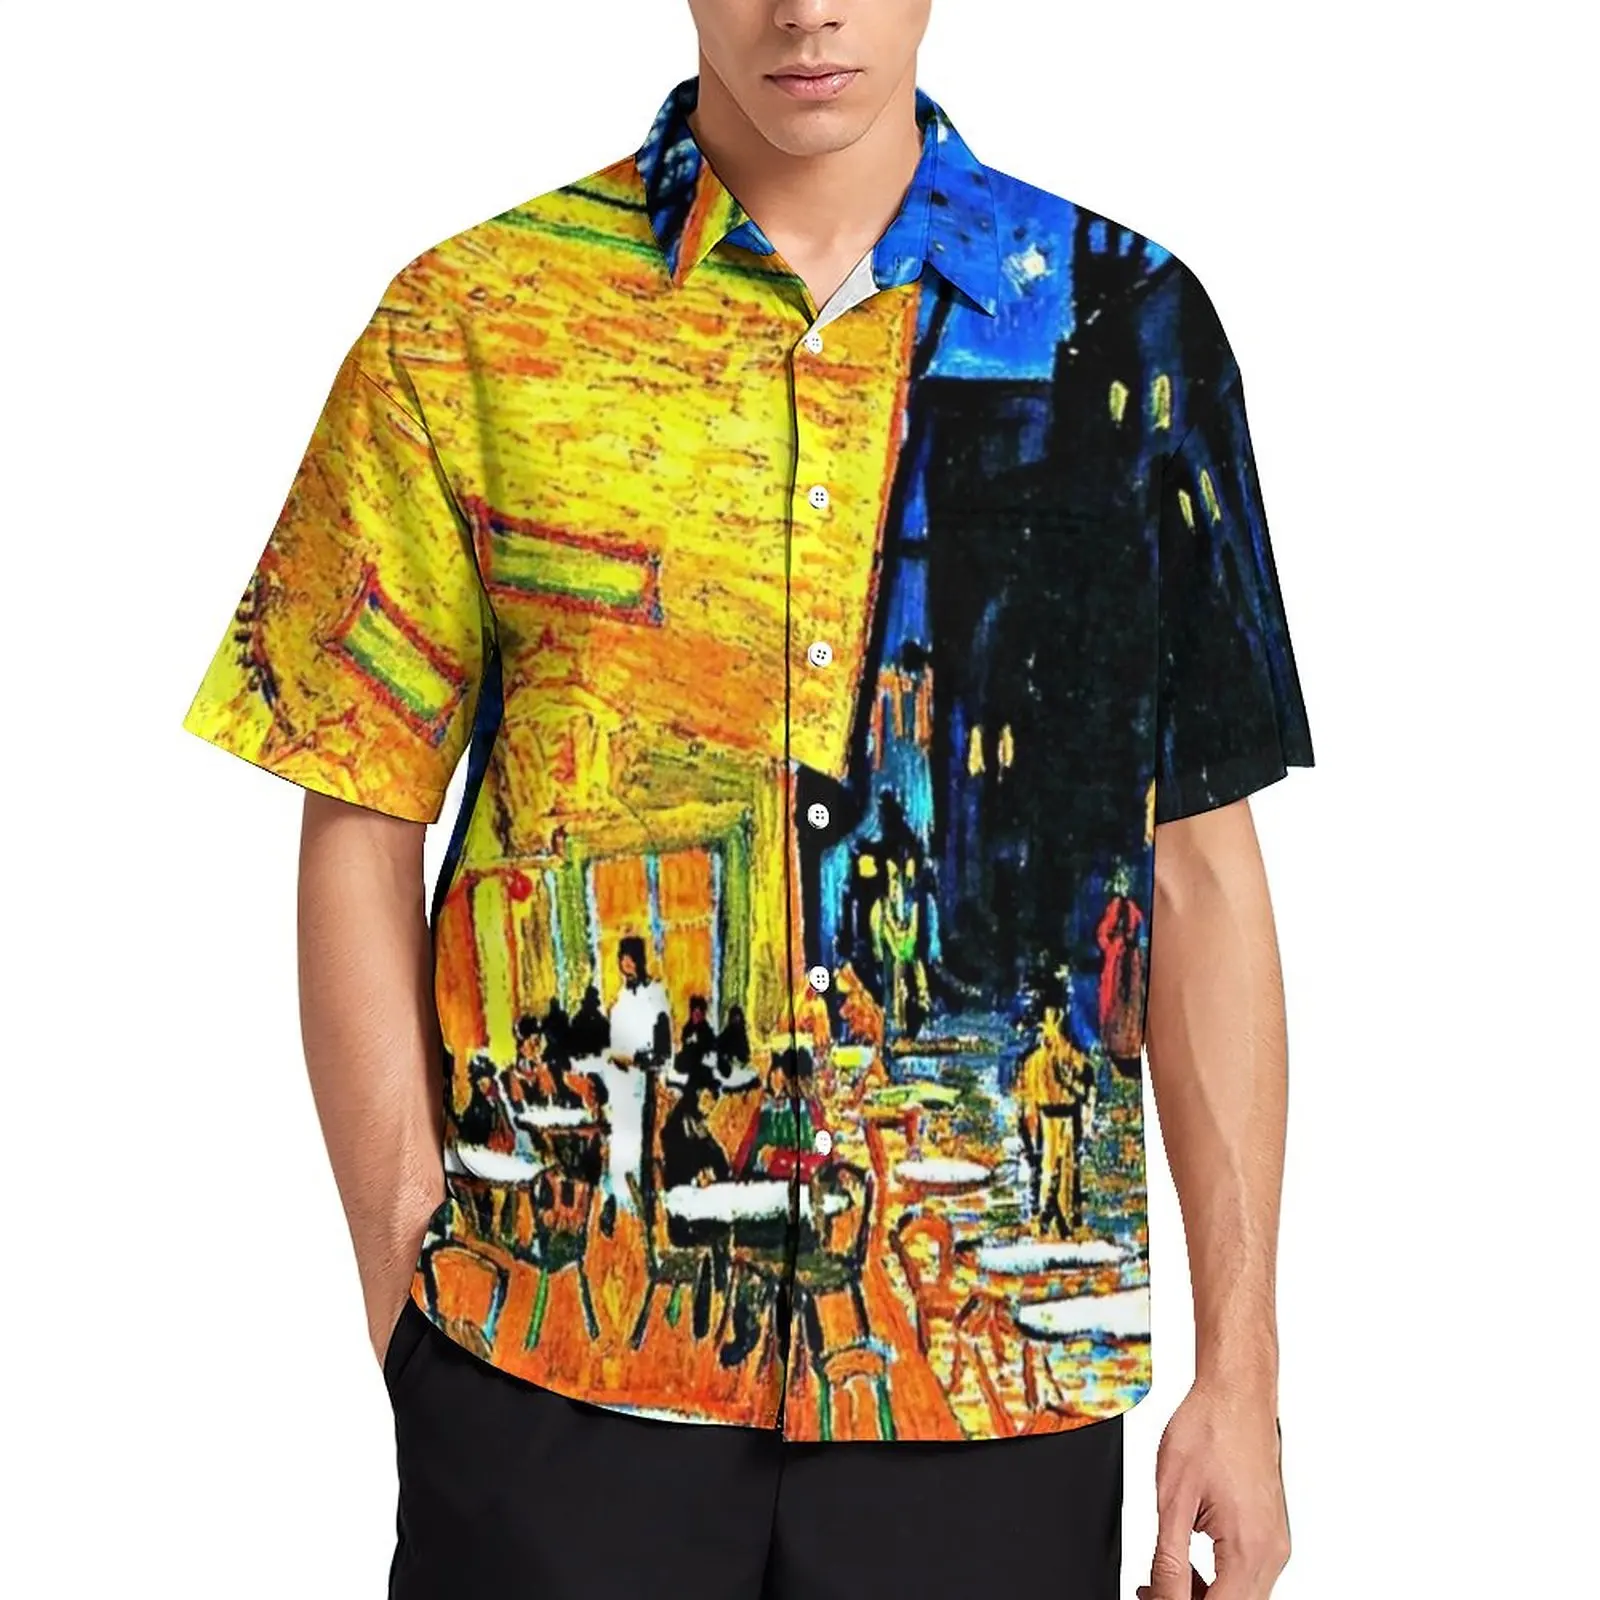 

Повседневные рубашки с принтом Ван Гога, рубашка для отпуска в кафе, террасе, Гавайские рубашки Y2K, мужские рубашки большого размера с принто...